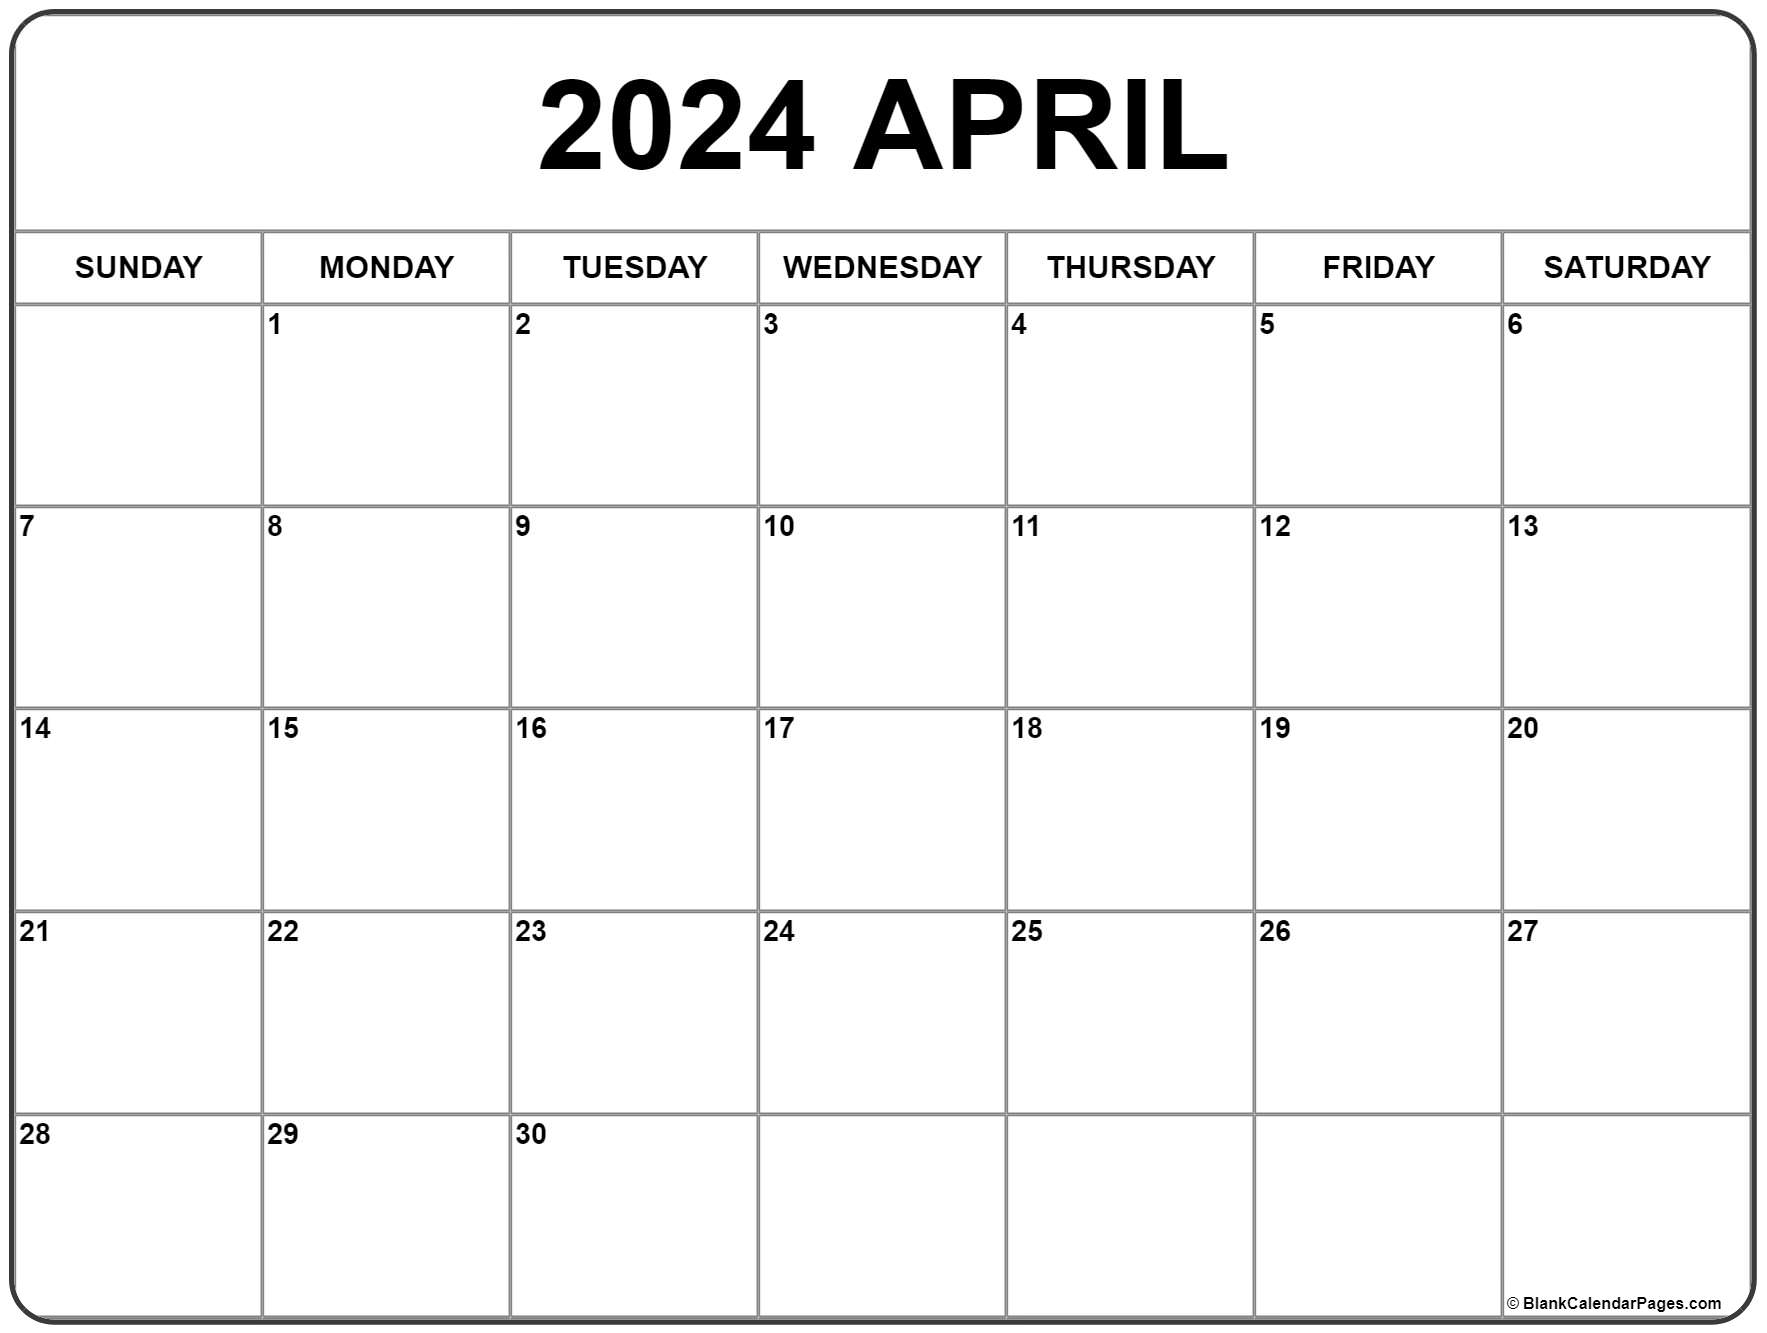 April 2024 Calendar | Free Printable Calendar for Printable April 2024 Calendar Free